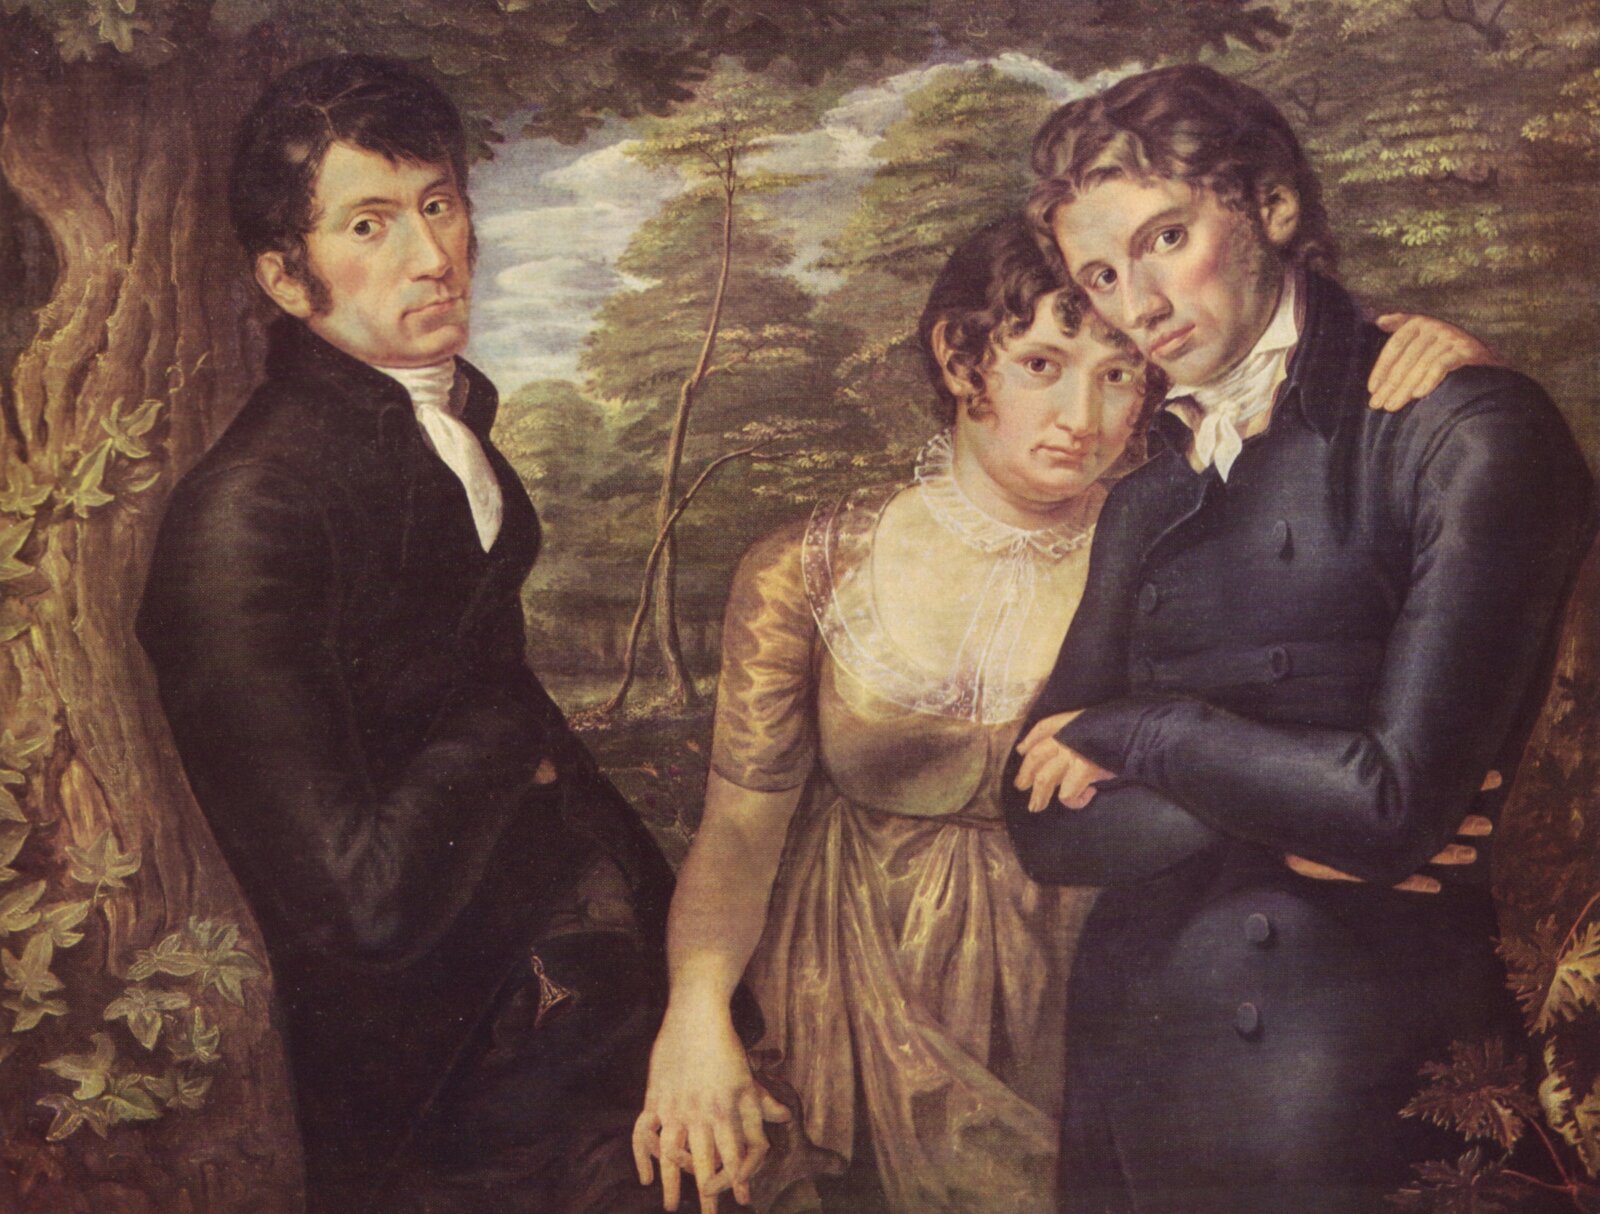 Obraz przedstawia troje ludzi w pozycji stojącej: dwóch mężczyzn i kobietę. Ich postaci widoczne są do wysokości ud. Kobieta ubrana jest w zwiewną suknię z przeźroczystym kołnierzykiem. Stoi pomiędzy dwoma mężczyznami, a bliżej niej stroi mężczyzna po prawej stronie obrazu. Obejmuje go ręką, która spoczywa na lewym ramieniu mężczyzny. Człowiek ten ubrany jest w surdut, na szyi ma fular, ręce trzyma splecione na brzuchu. Mężczyzna po drugiej stronie opiera się o pień drzewa. Ma na sobie czarny surdut i biały fular. Włosy ma krótkie, a grzywka zaczesana jest na lewą stronę twarzy. Jego prawa ręka schowana jest pod surdut, prawa dłoń splata się z prawą dłonią kobiety. W tle widoczne są drzewa. Wszystkie postaci wpatrują się w widza.